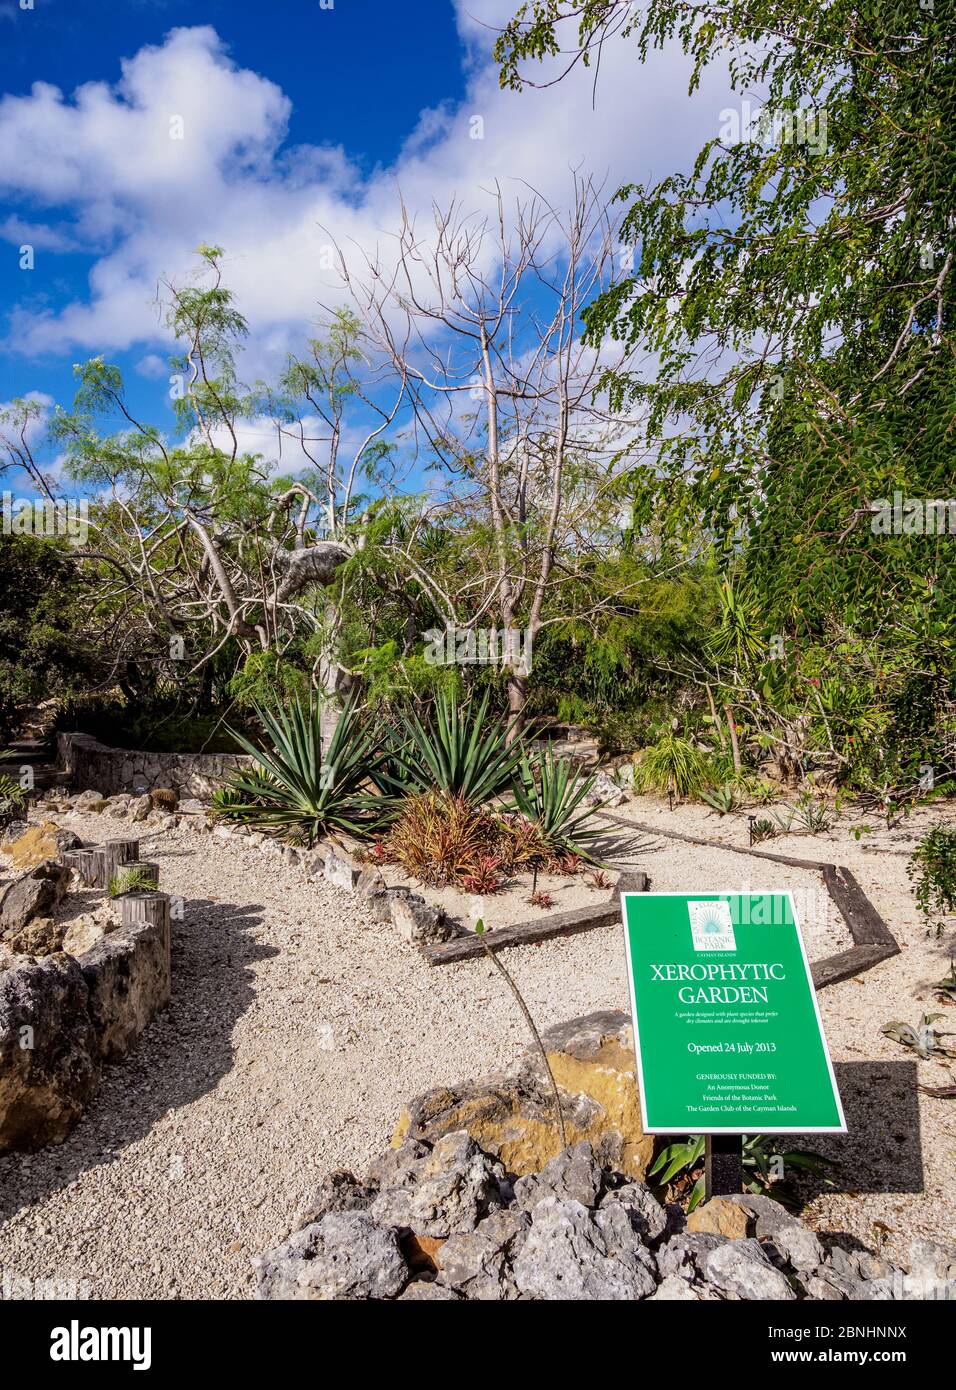 Xerophytic Garden, Queen Elizabeth II Botanic Park, North Side, Grand Cayman, Cayman Islands Stock Photo